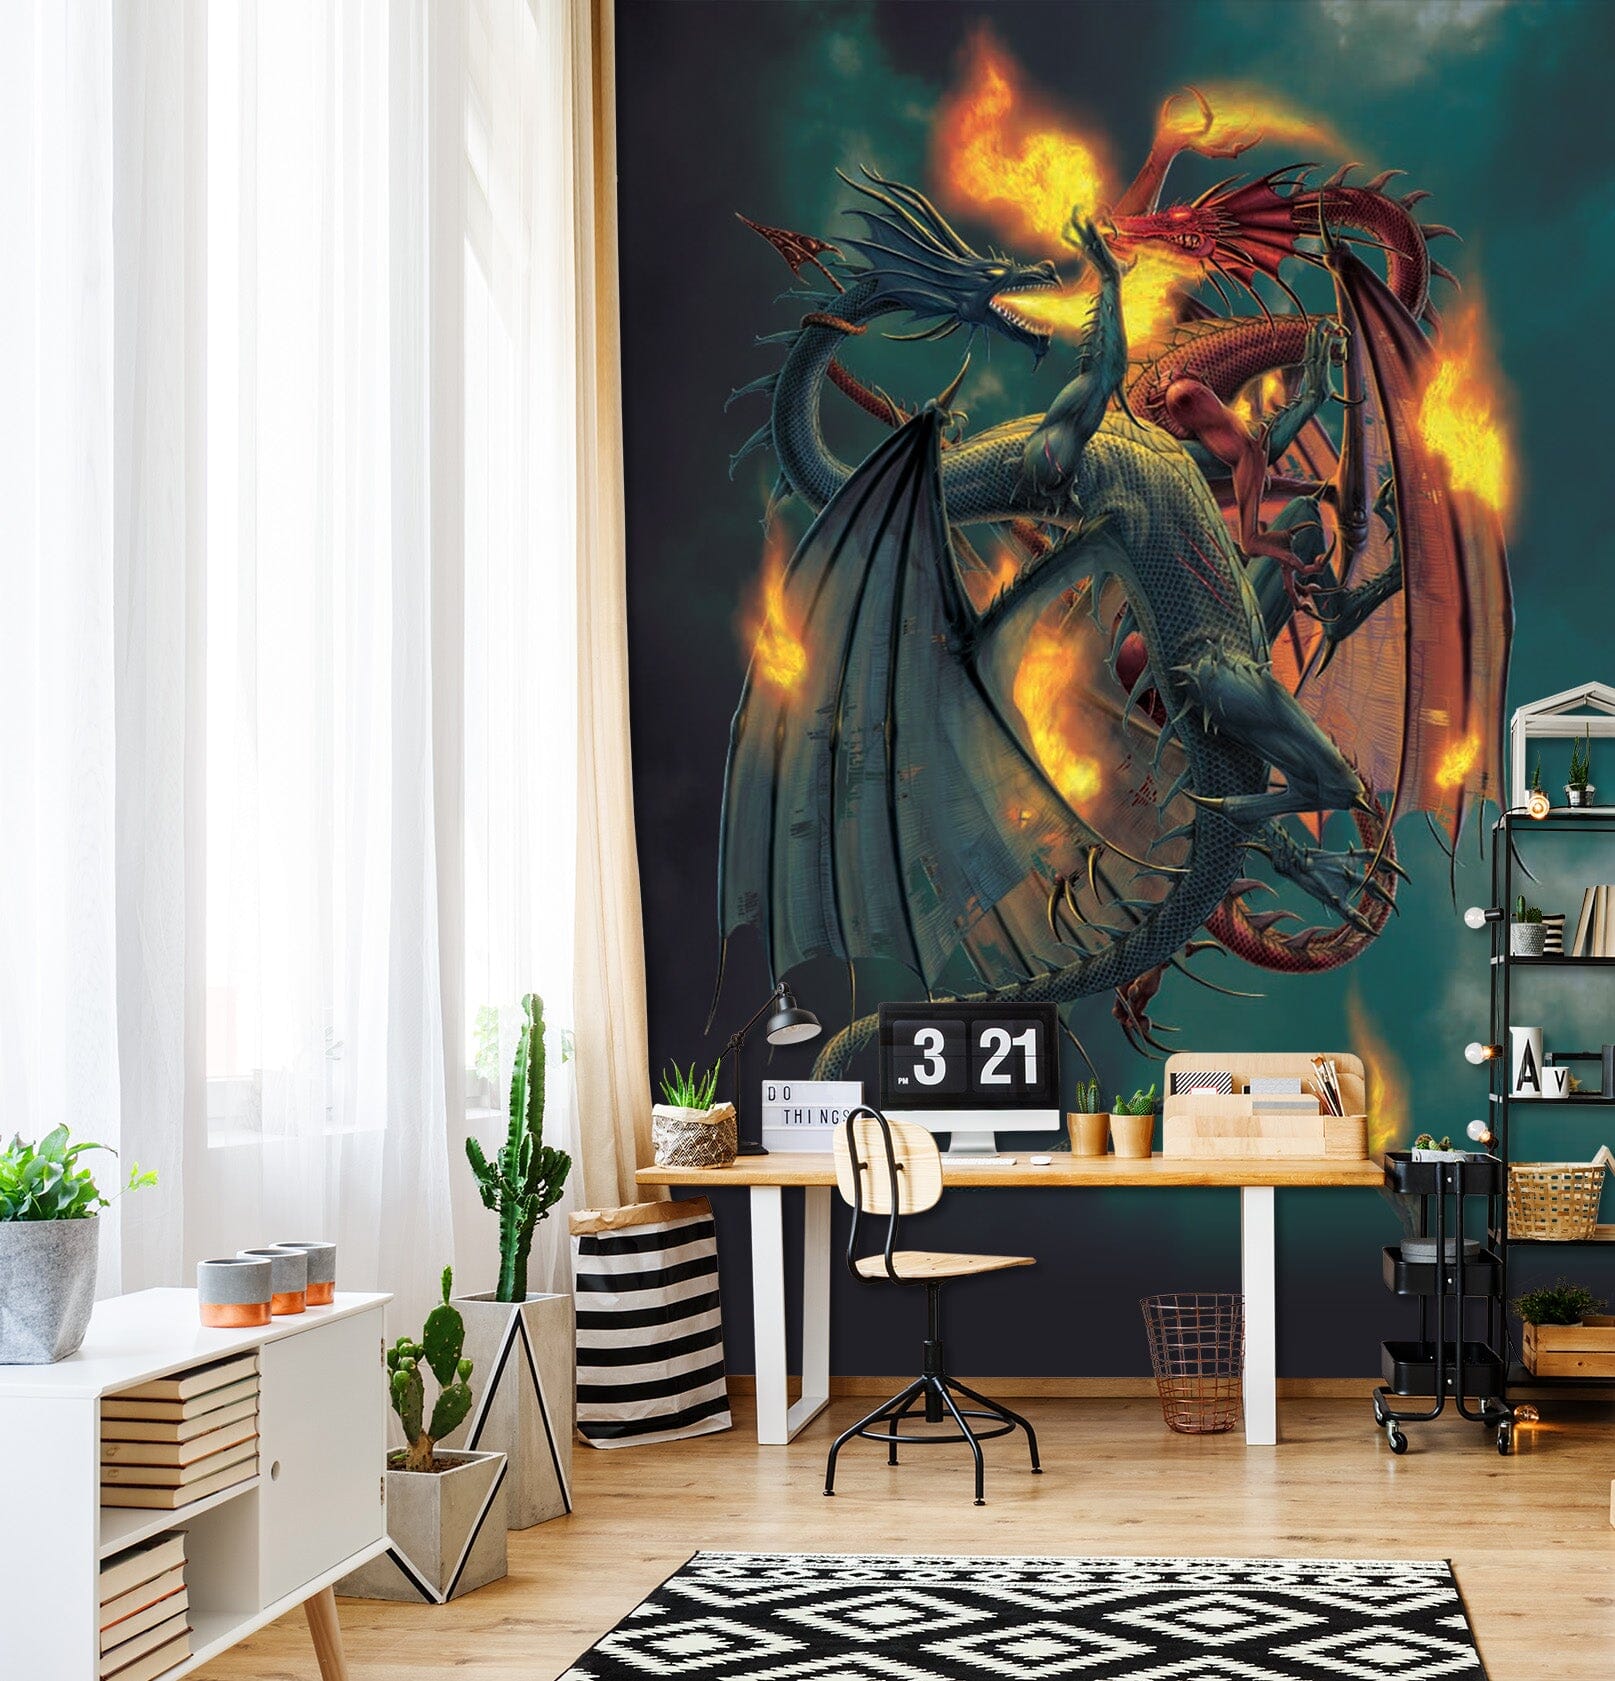 3D Fire Dragon 1422 Wall Murals Exclusive Designer Vincent Wallpaper AJ Wallpaper 2 